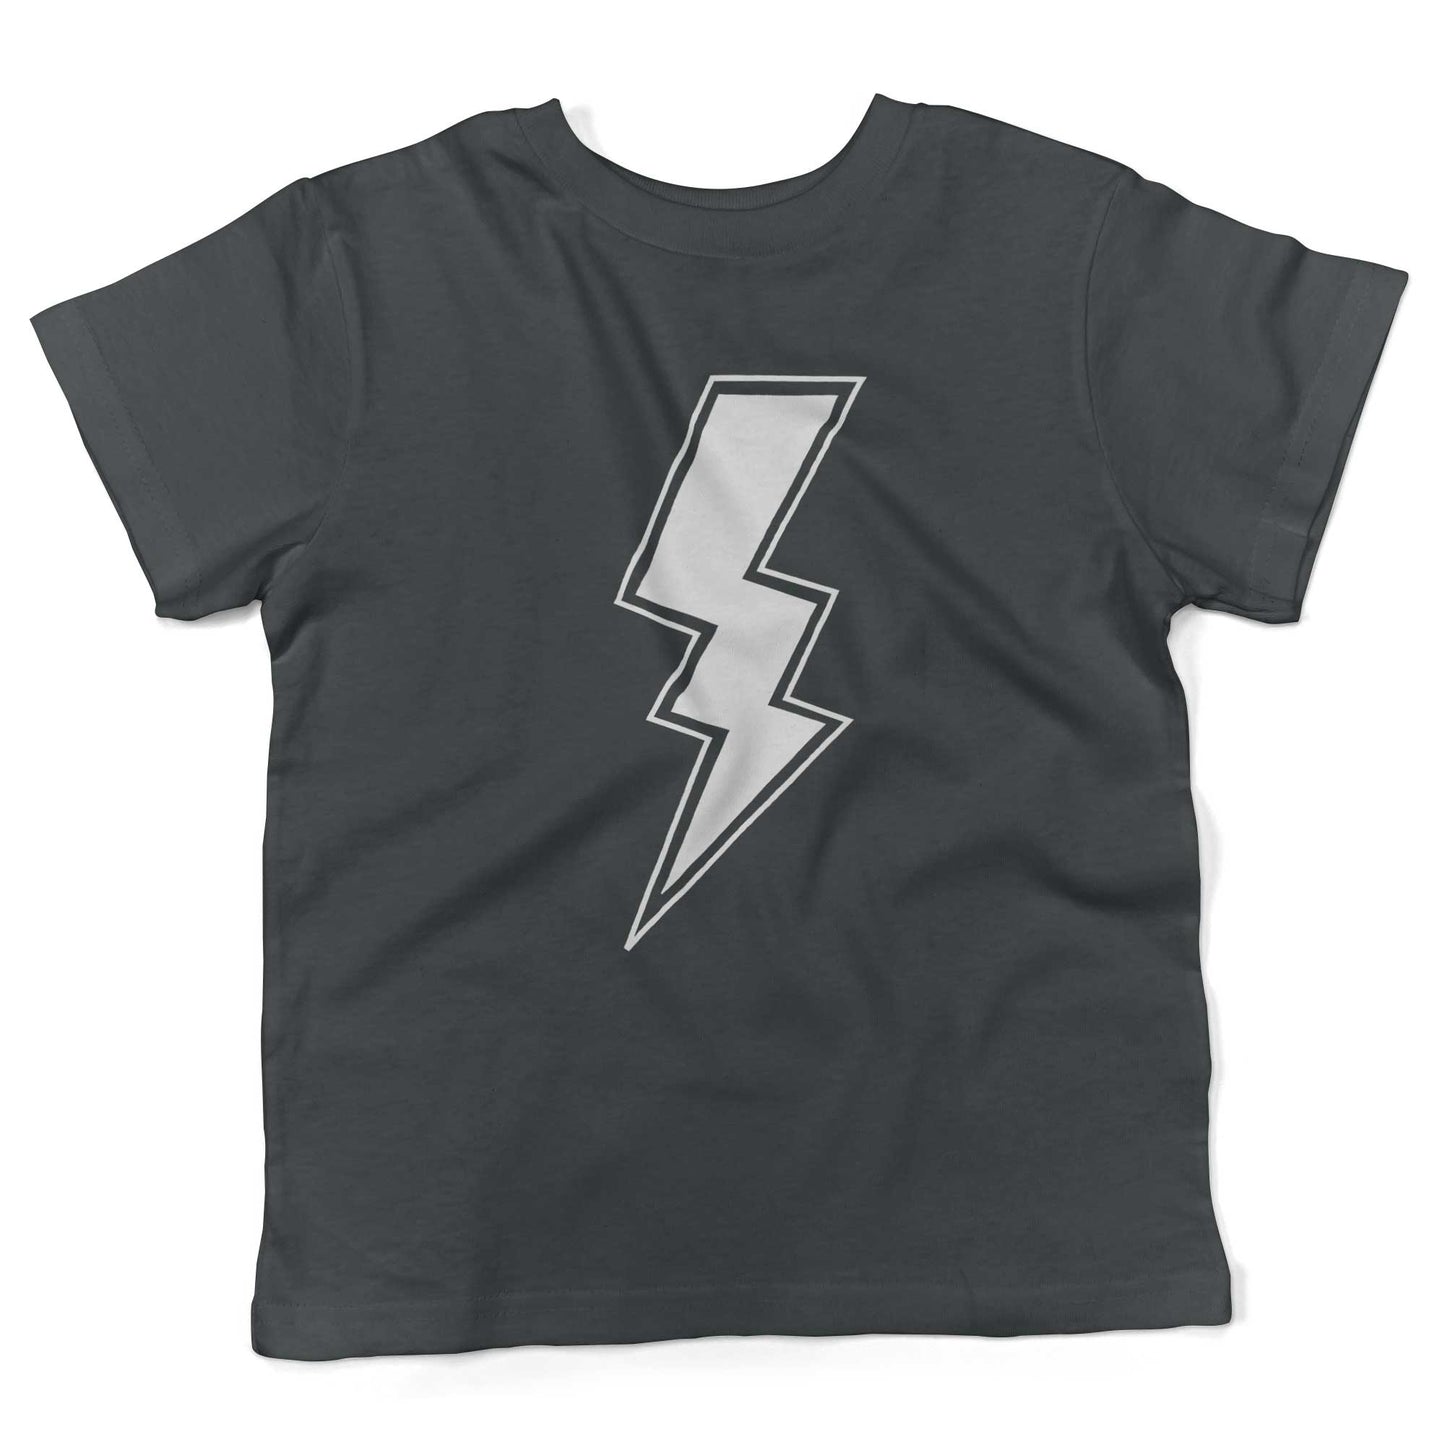 Giant Lightning Bolt Toddler Shirt-Asphalt-2T